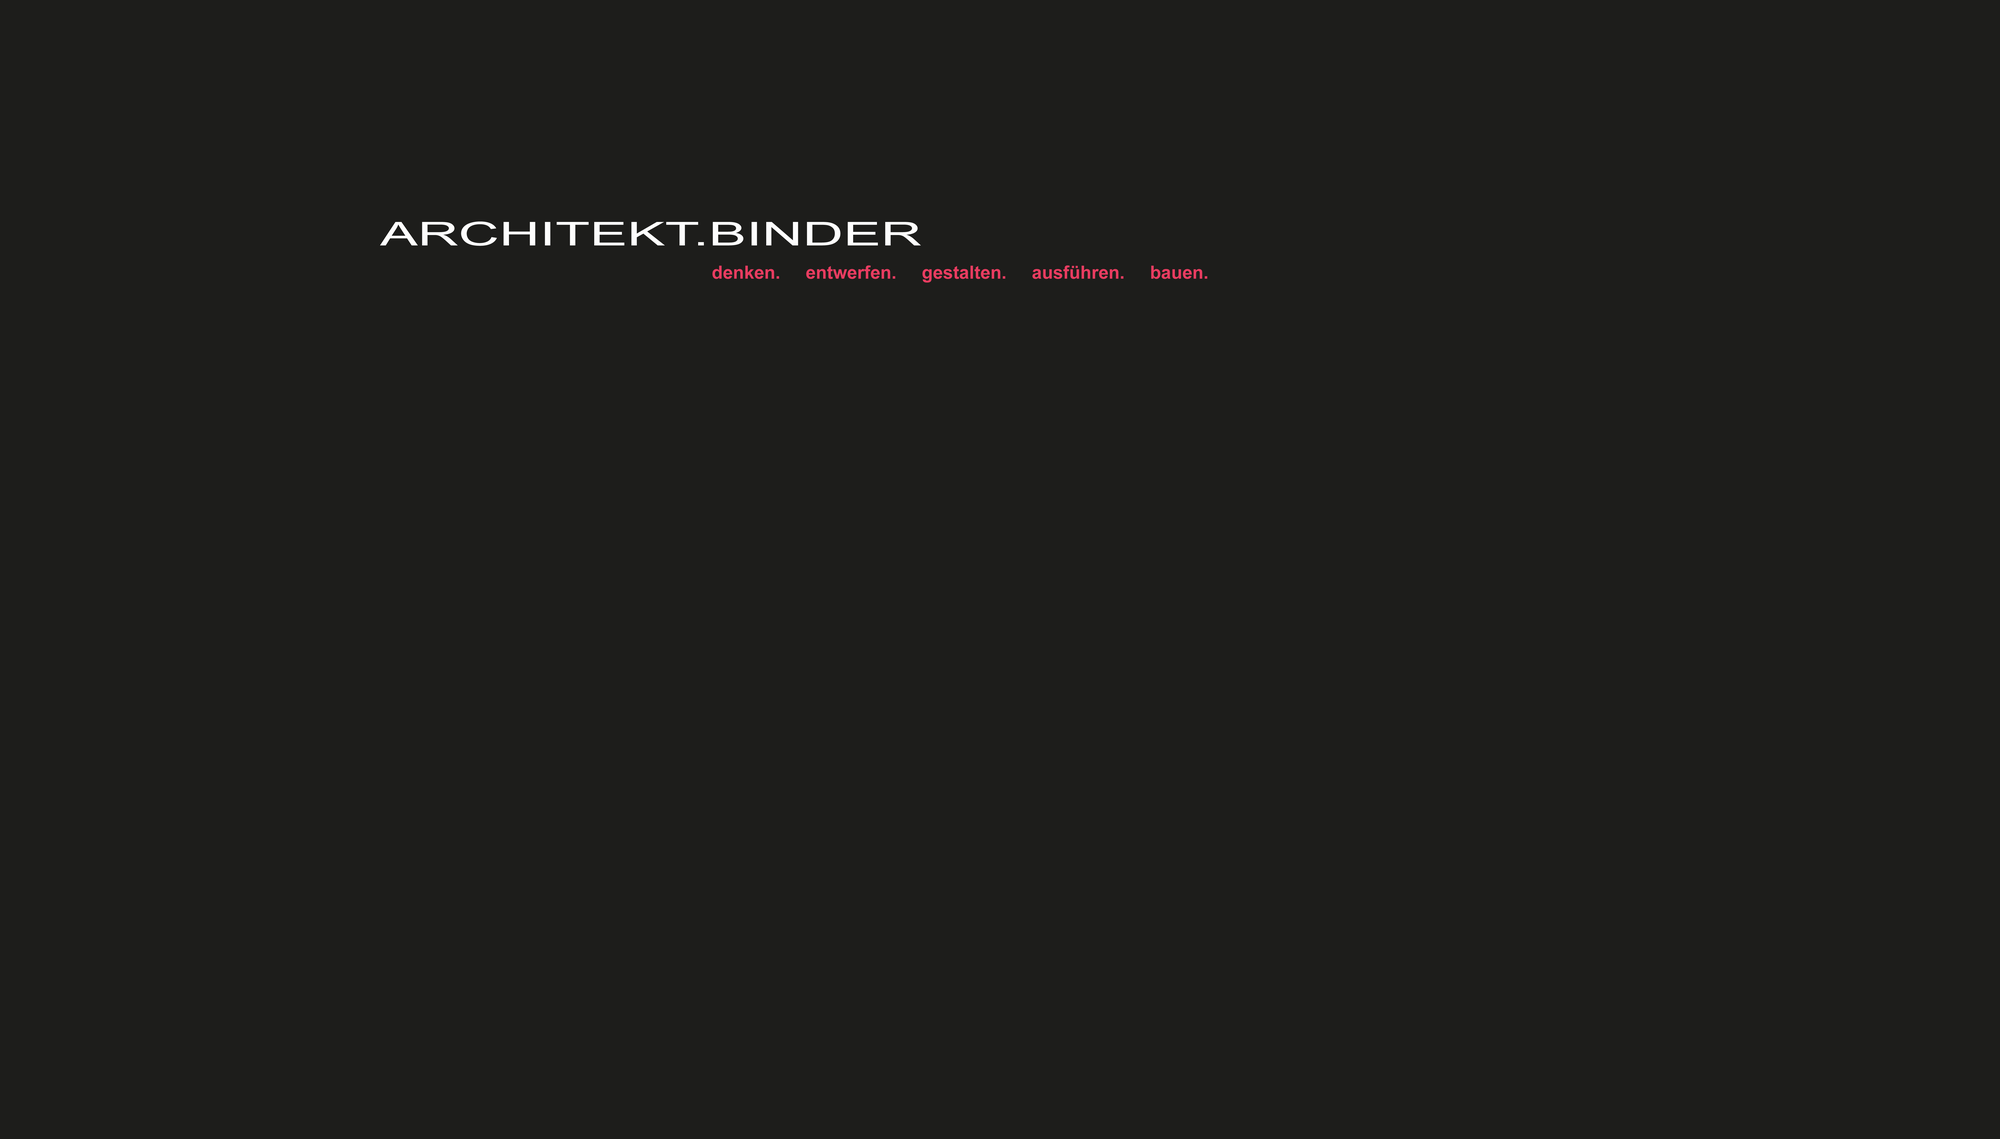 (c) Architekt-binder.de